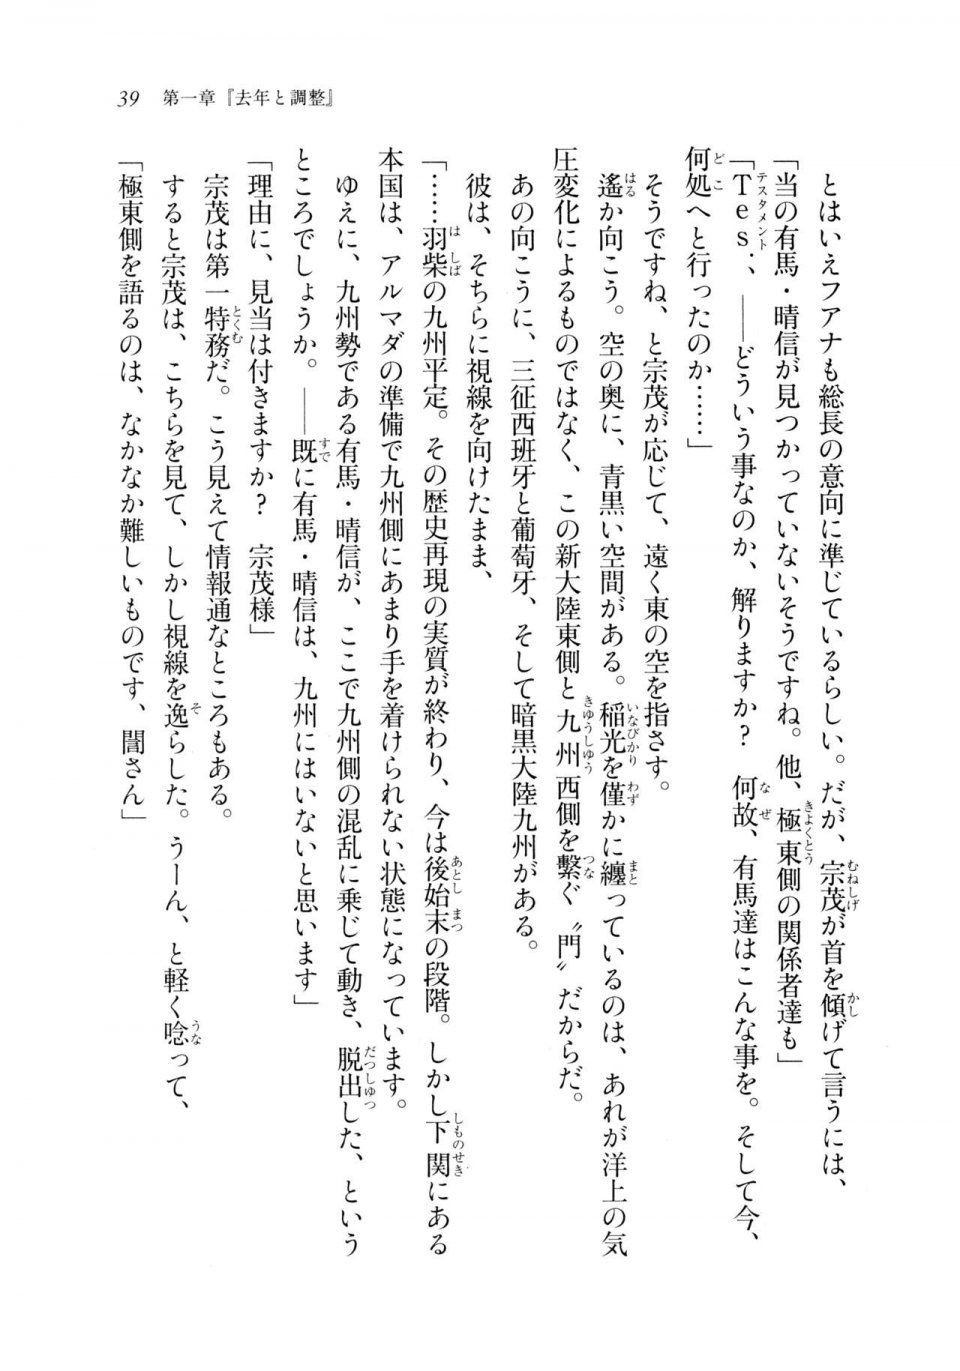 Kyoukai Senjou no Horizon LN Sidestory Vol 2 - Photo #37